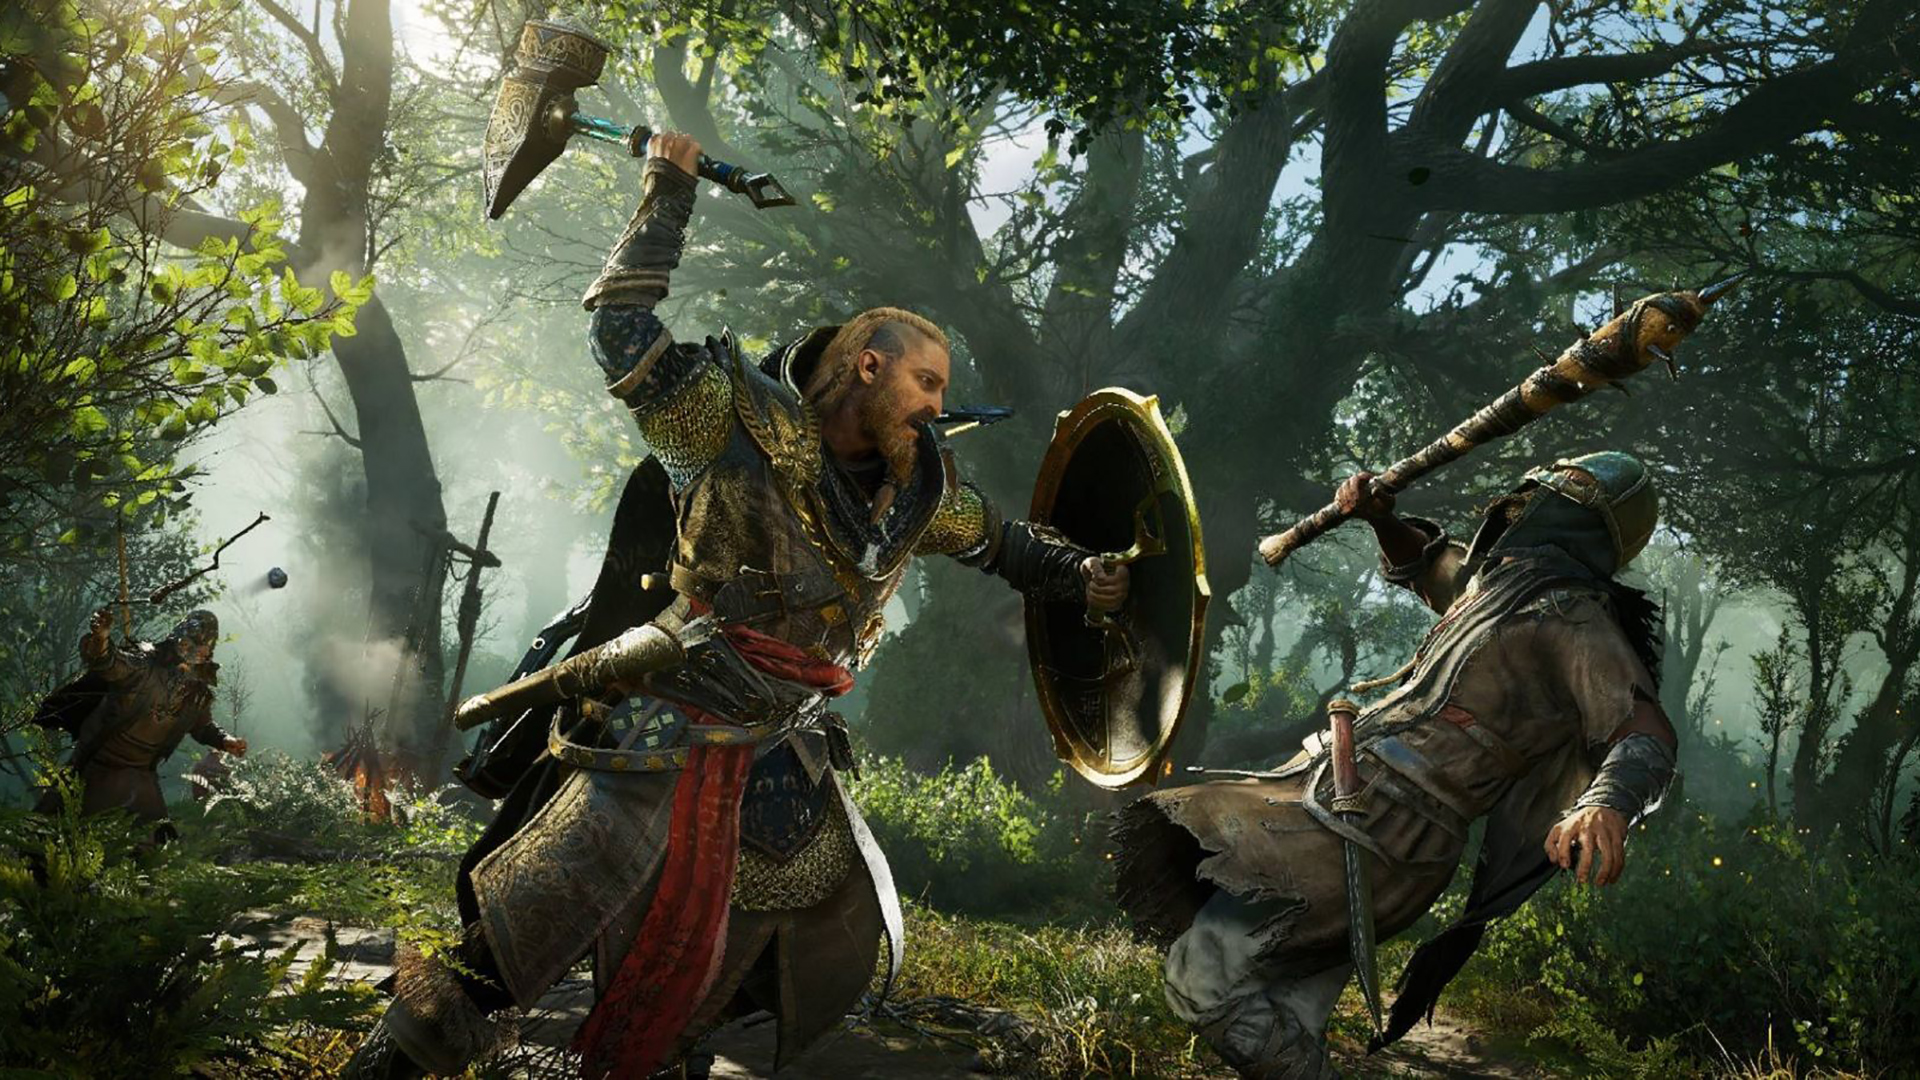 ข่าวลือ! เนื้อหาเสริมใหม่ของ Assassin’s Creed Valhalla จะมีชื่อว่า Dawn Of Ragnarok